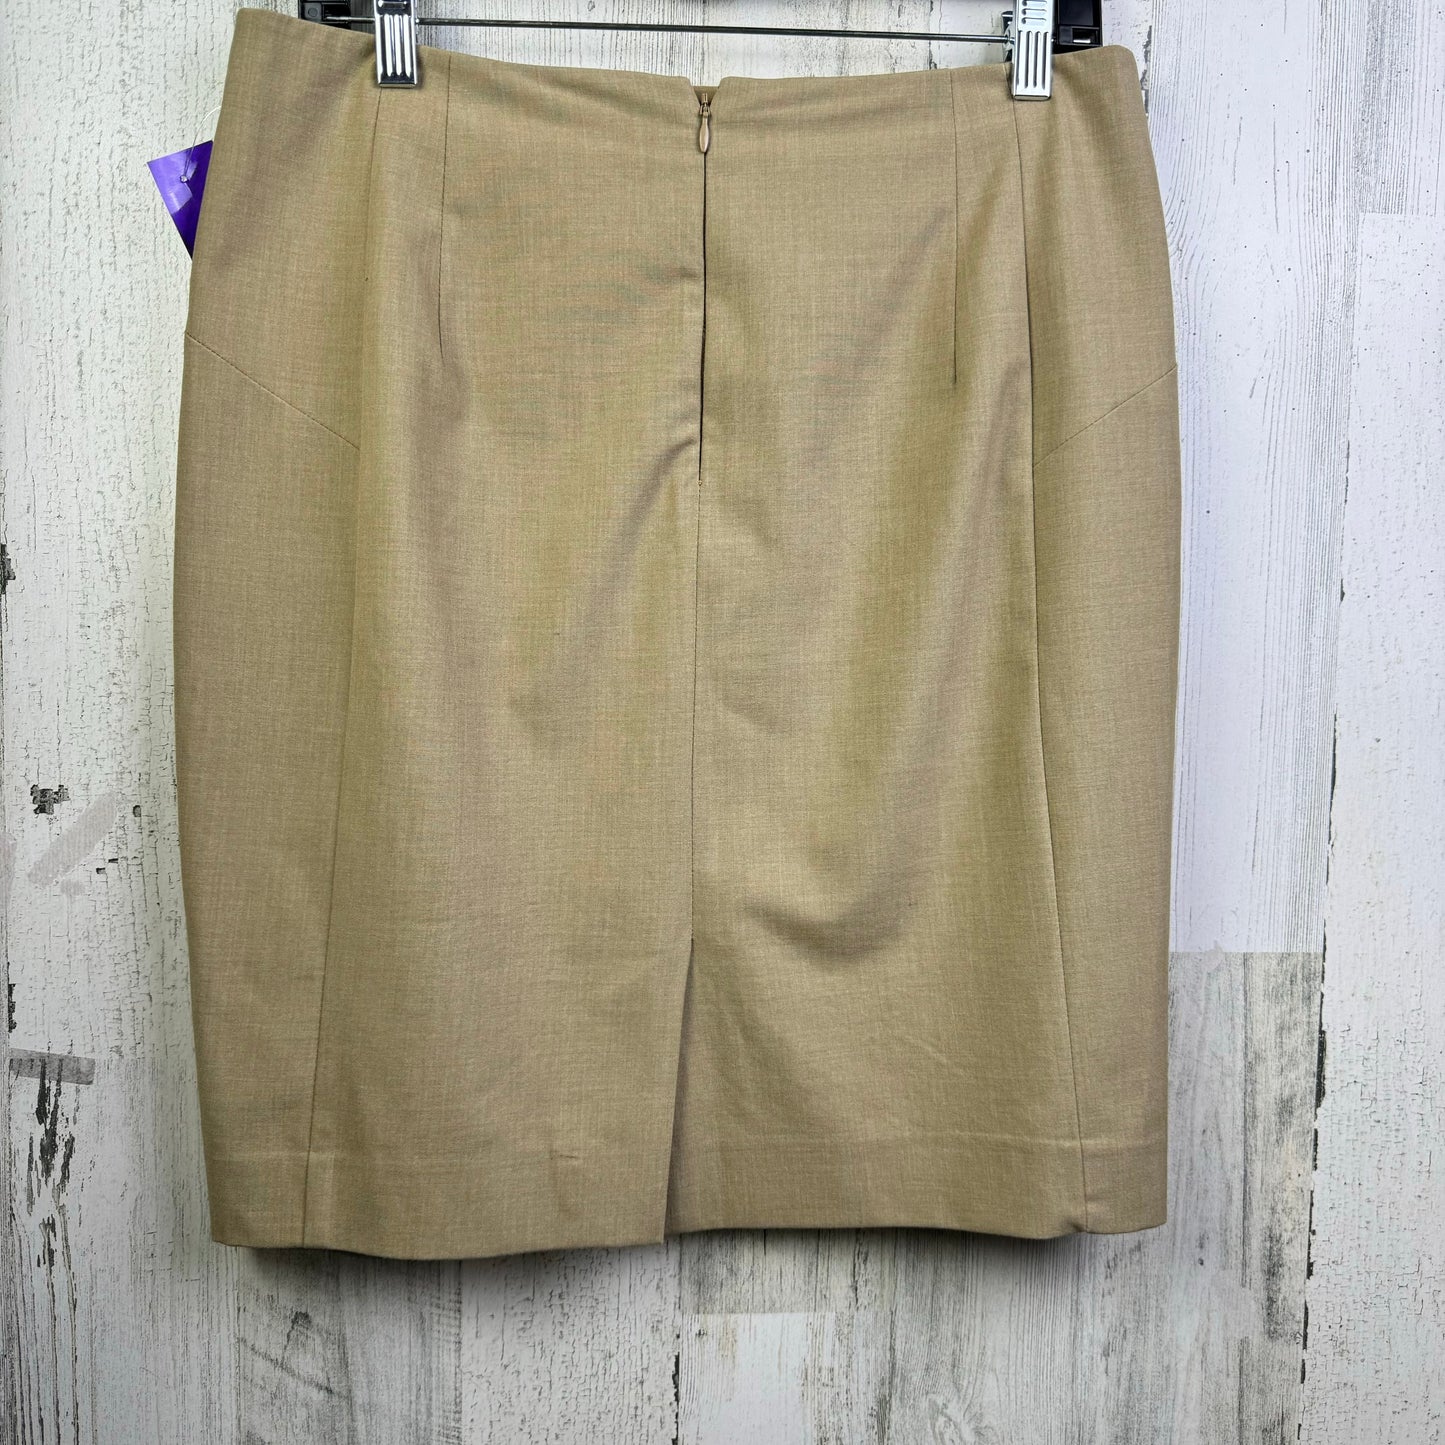 Tan Skirt Mini & Short Limited, Size 8